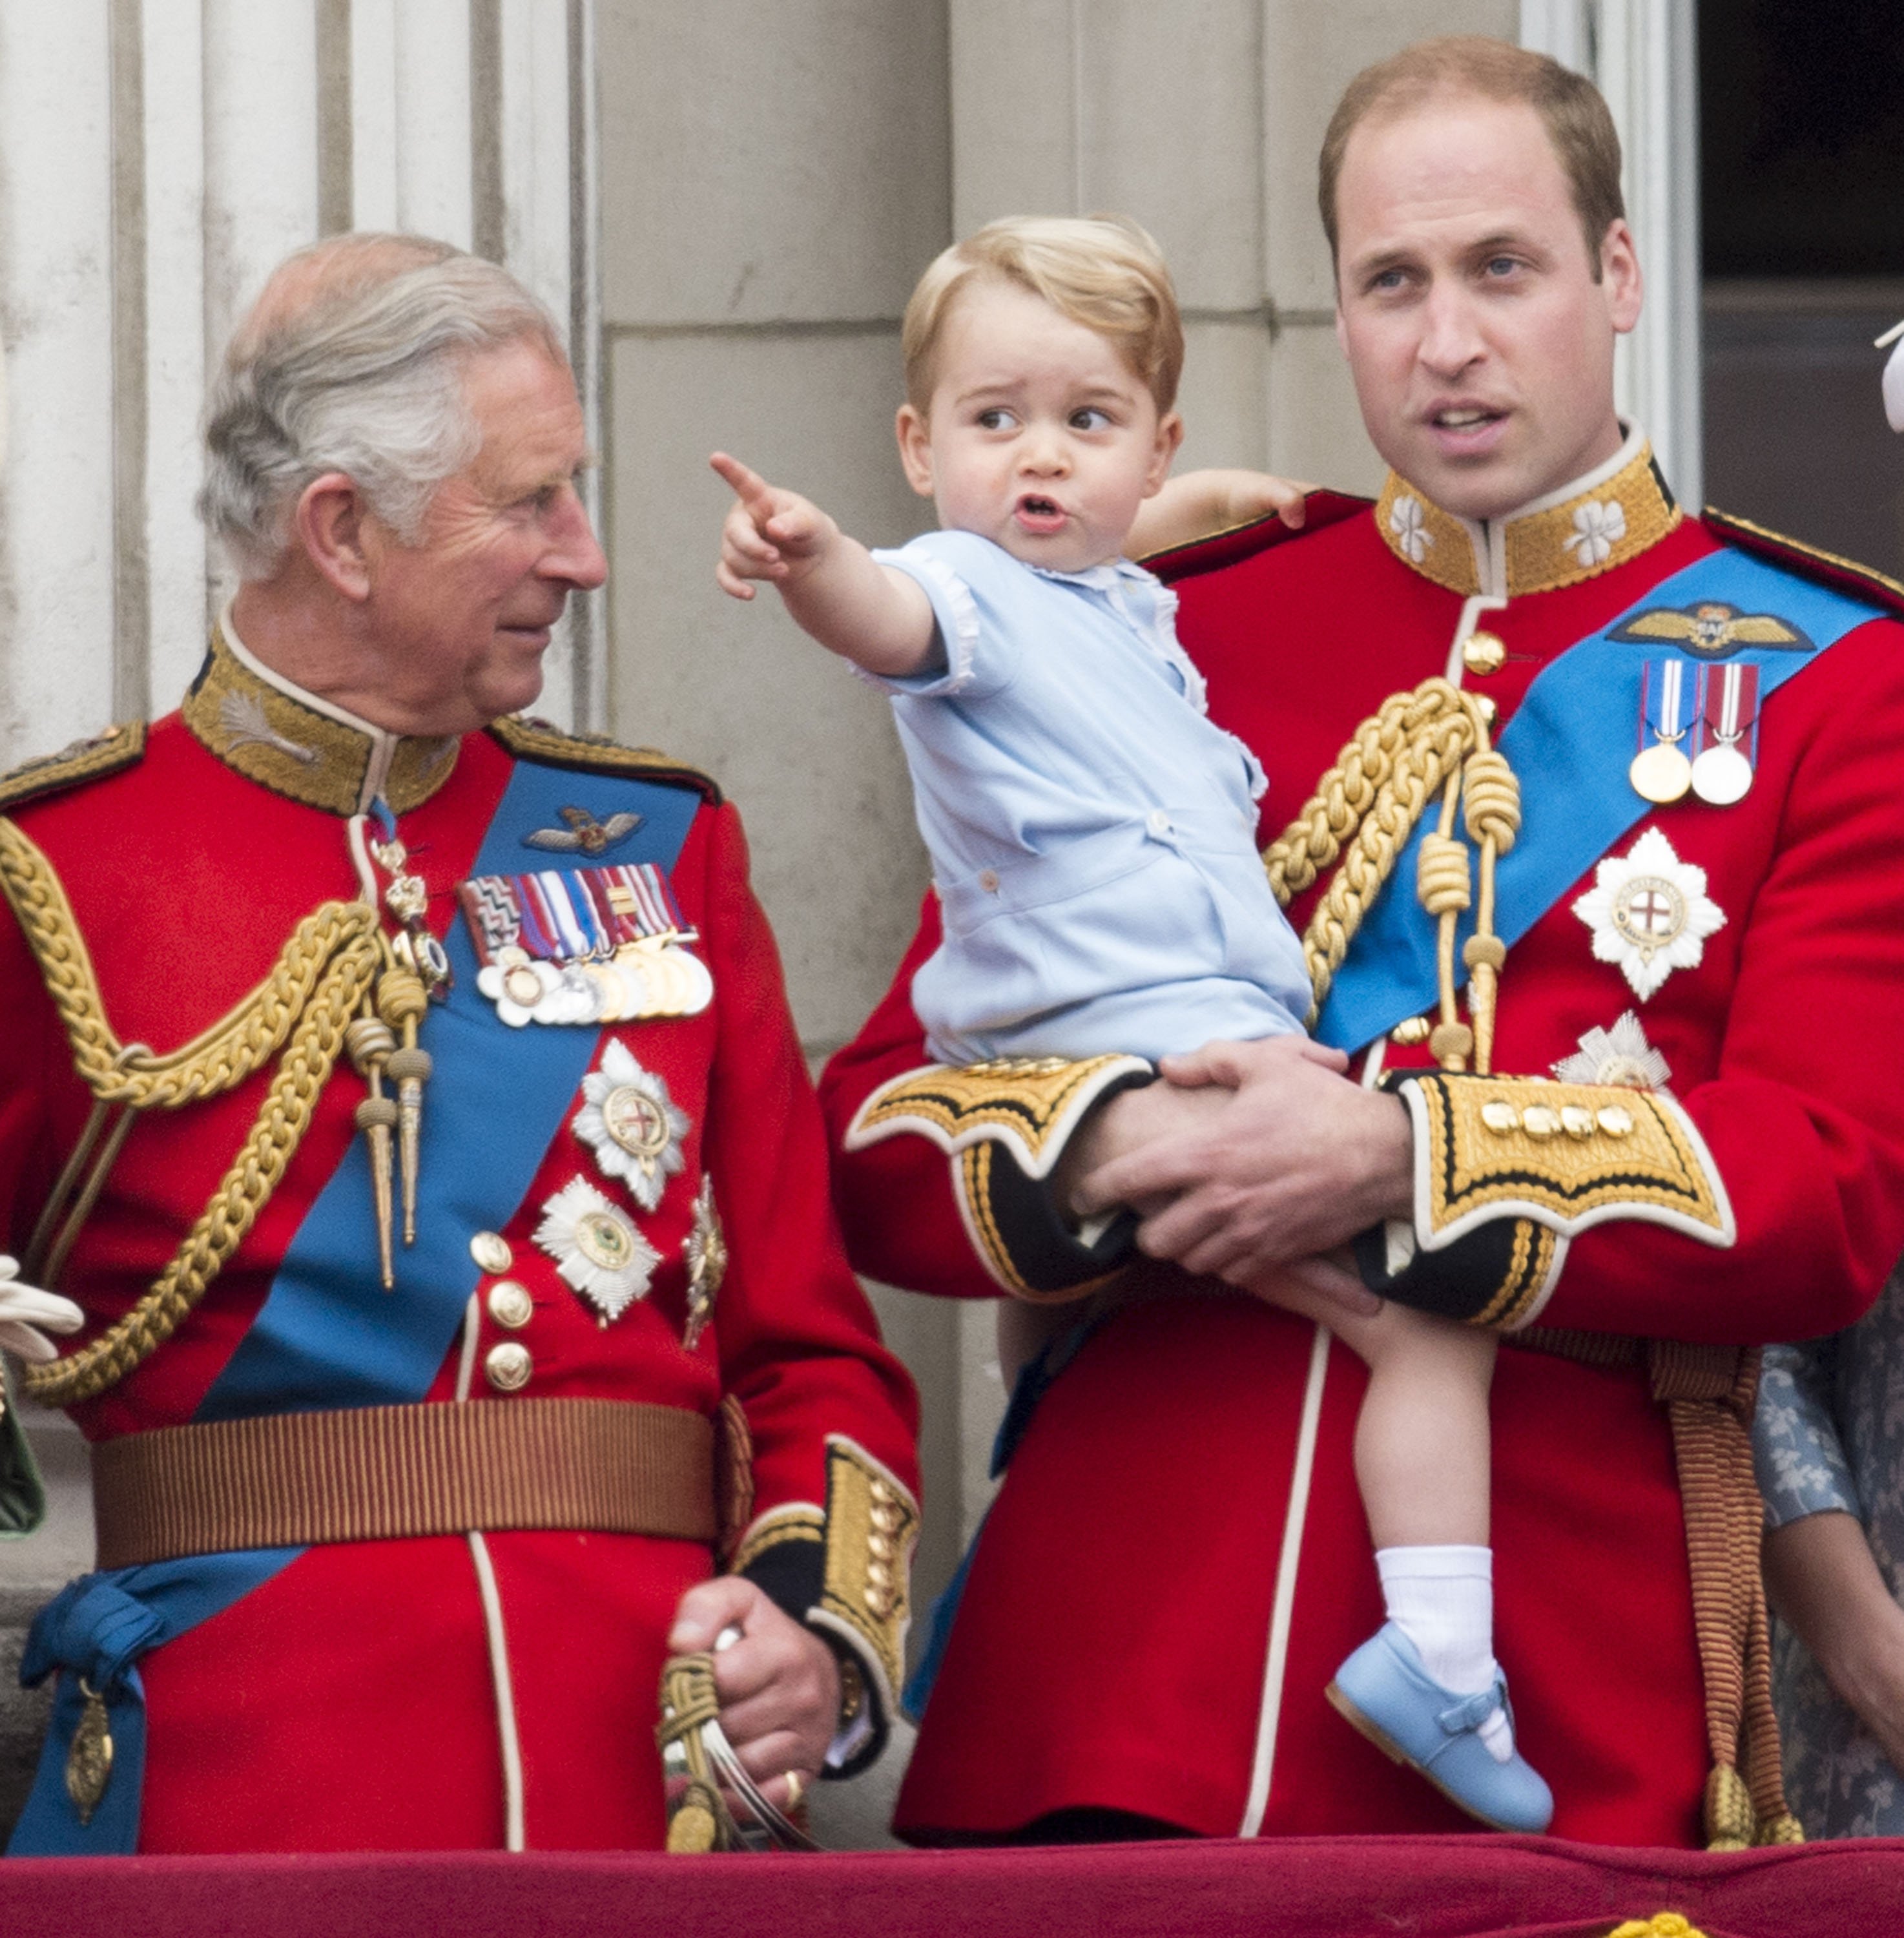 König Charles III mit Prinz William und Prinz George von Cambridge während der jährlichen Trooping the Colour-Zeremonie im Buckingham Palace am 13. Juni 2015 in London, England. | Quelle: Getty Images